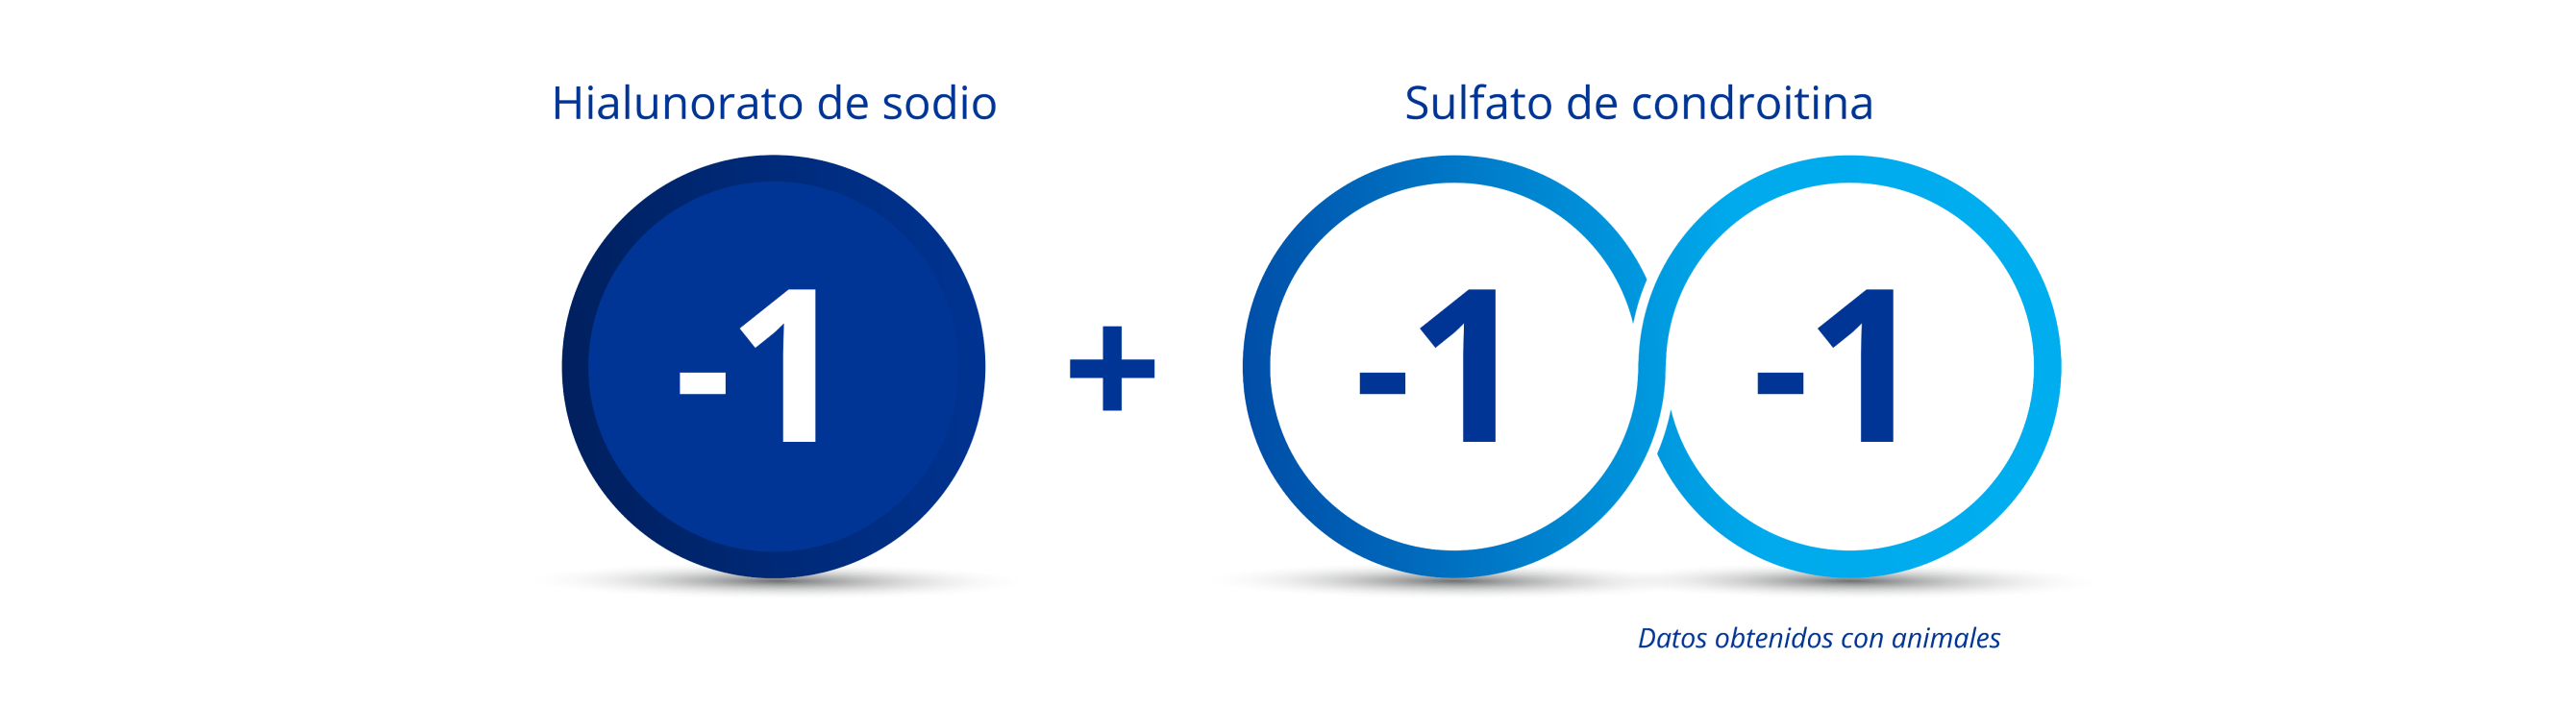 Círculo azul oscuro con el número “-1” en el medio para indicar la carga del hialuronato de sodio. 2 círculos azules interconectados, ambos con el número “-1” para indicar la carga doble negativa del sulfato de condroitina. Hay un símbolo de plus entre el círculo azul oscuro y los dos círculos interconectados para ilustrar que cuando el hialuronato de sodio se combina con el sulfato de condroitina, se obtiene una carga triple negativa.